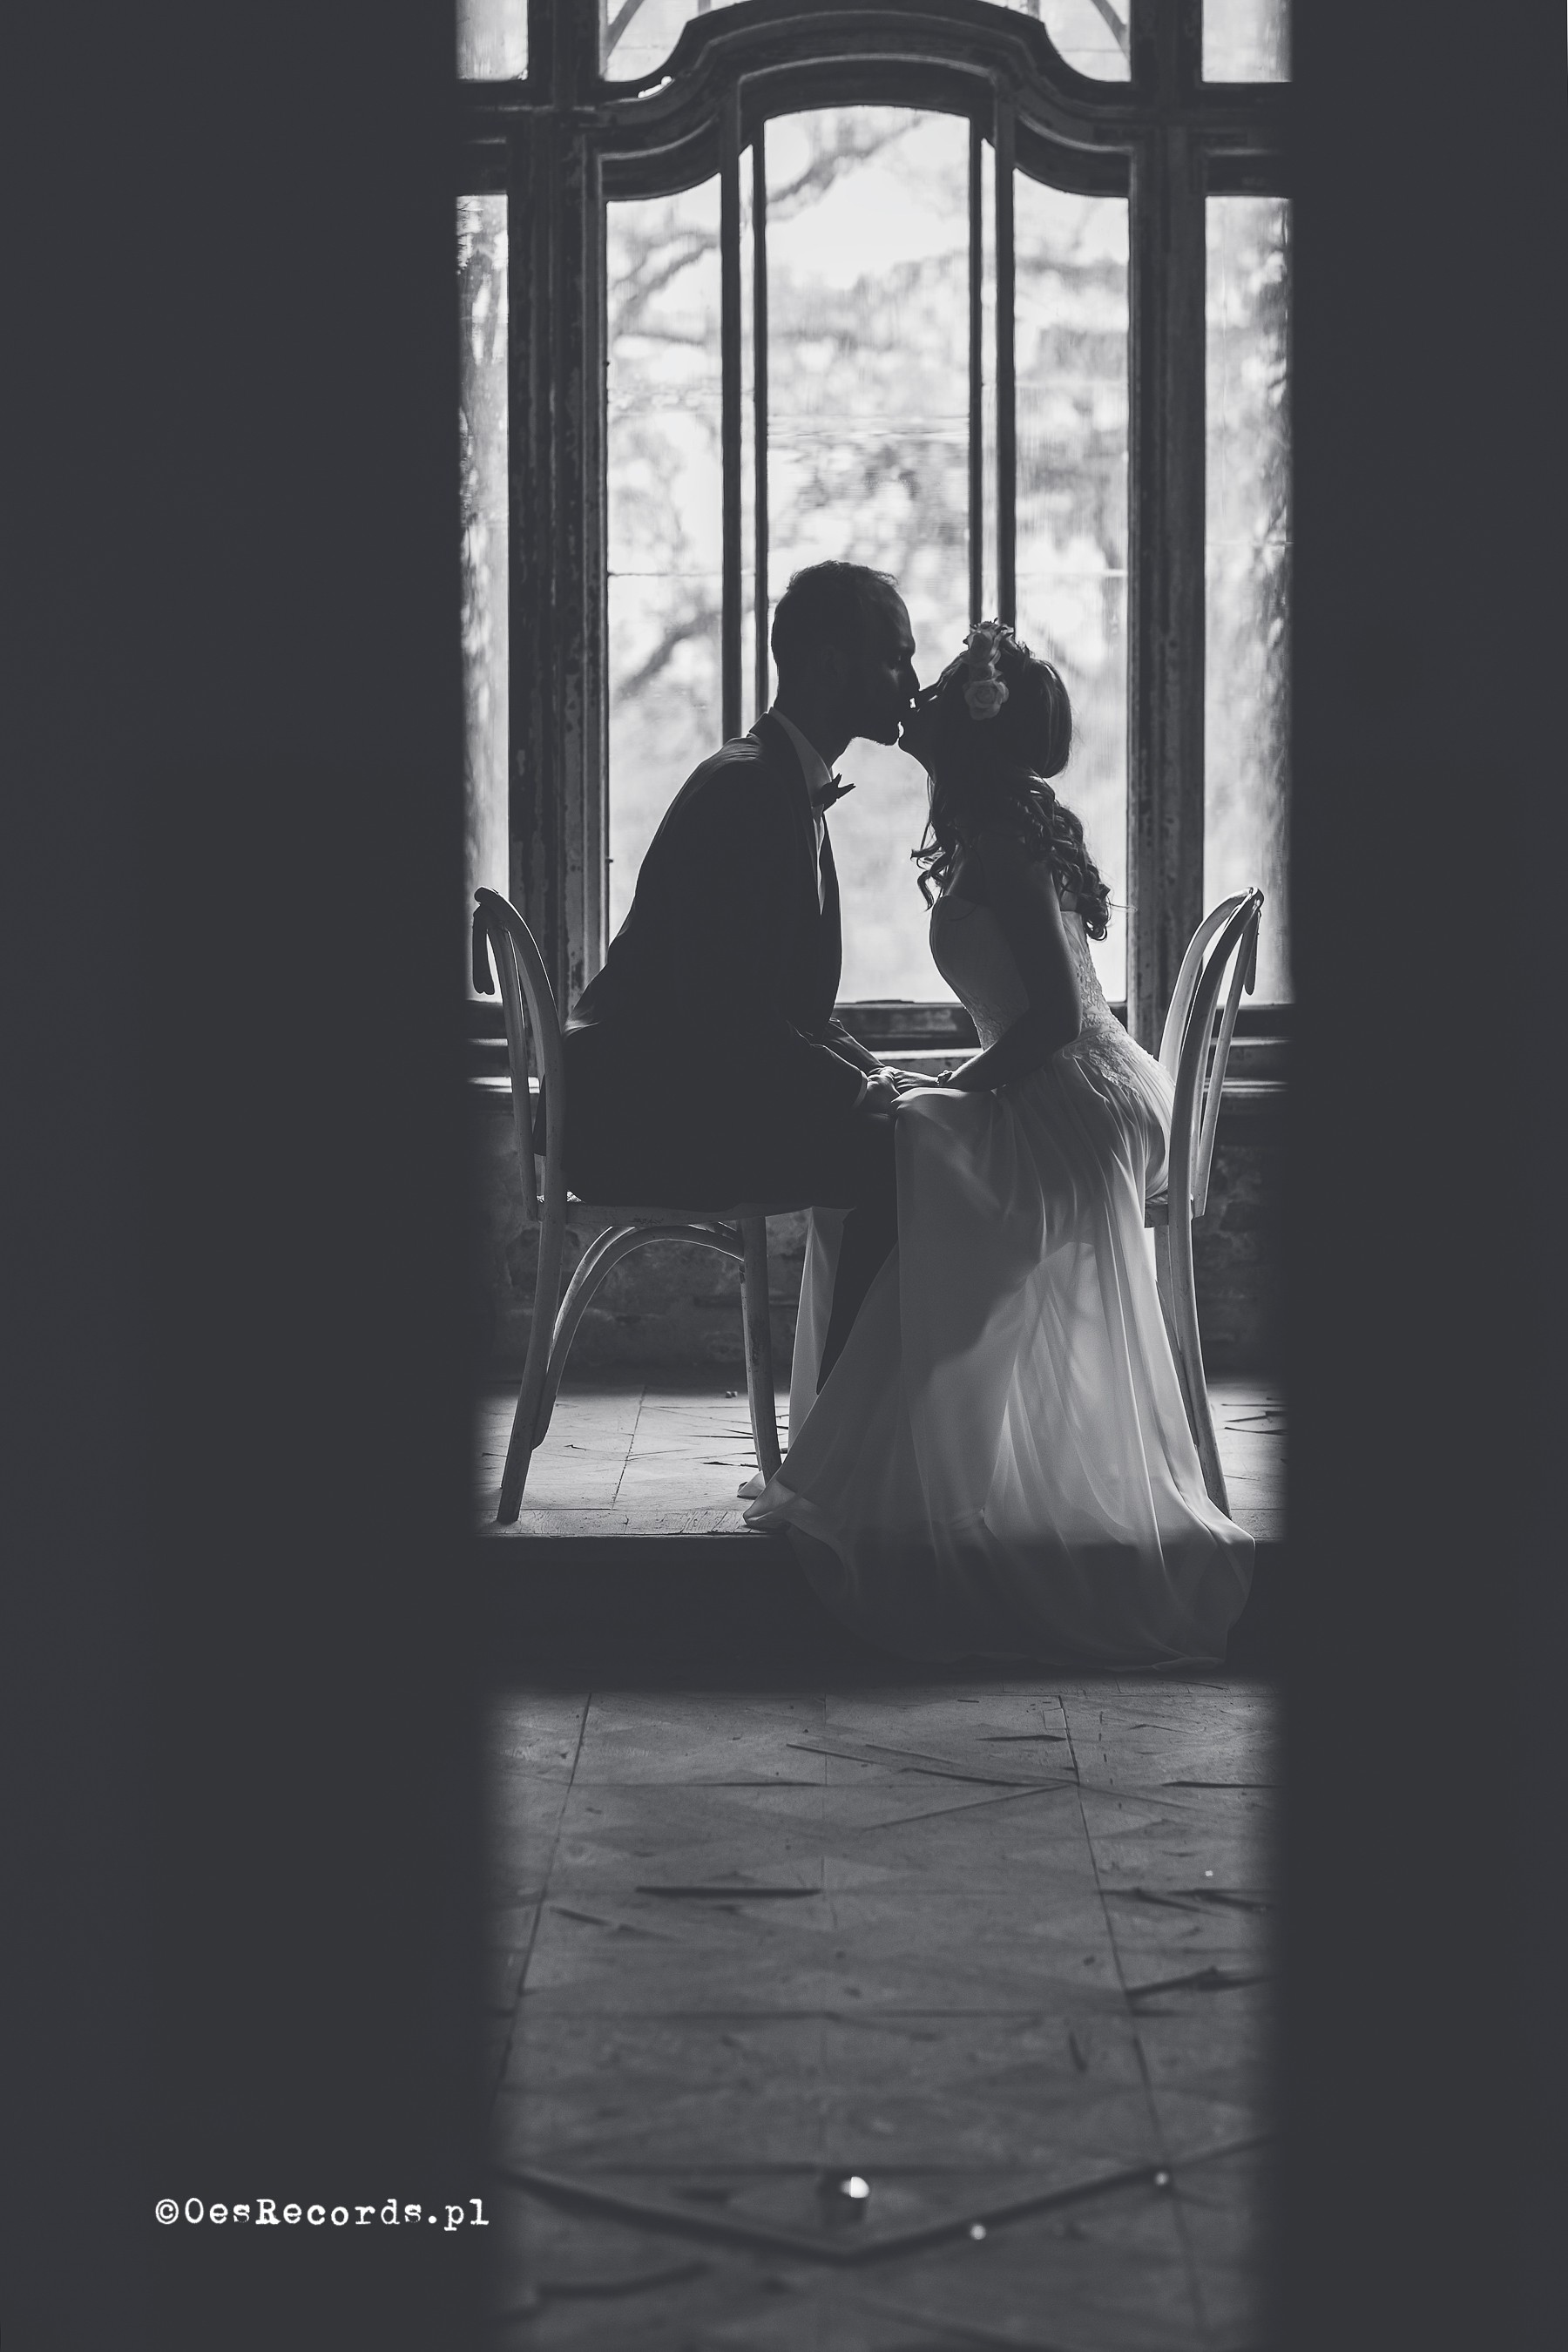 fotograf zabrze studio-oesrecords portfolio zdjecia slubne inspiracje wesele plener slubny sesja slubna